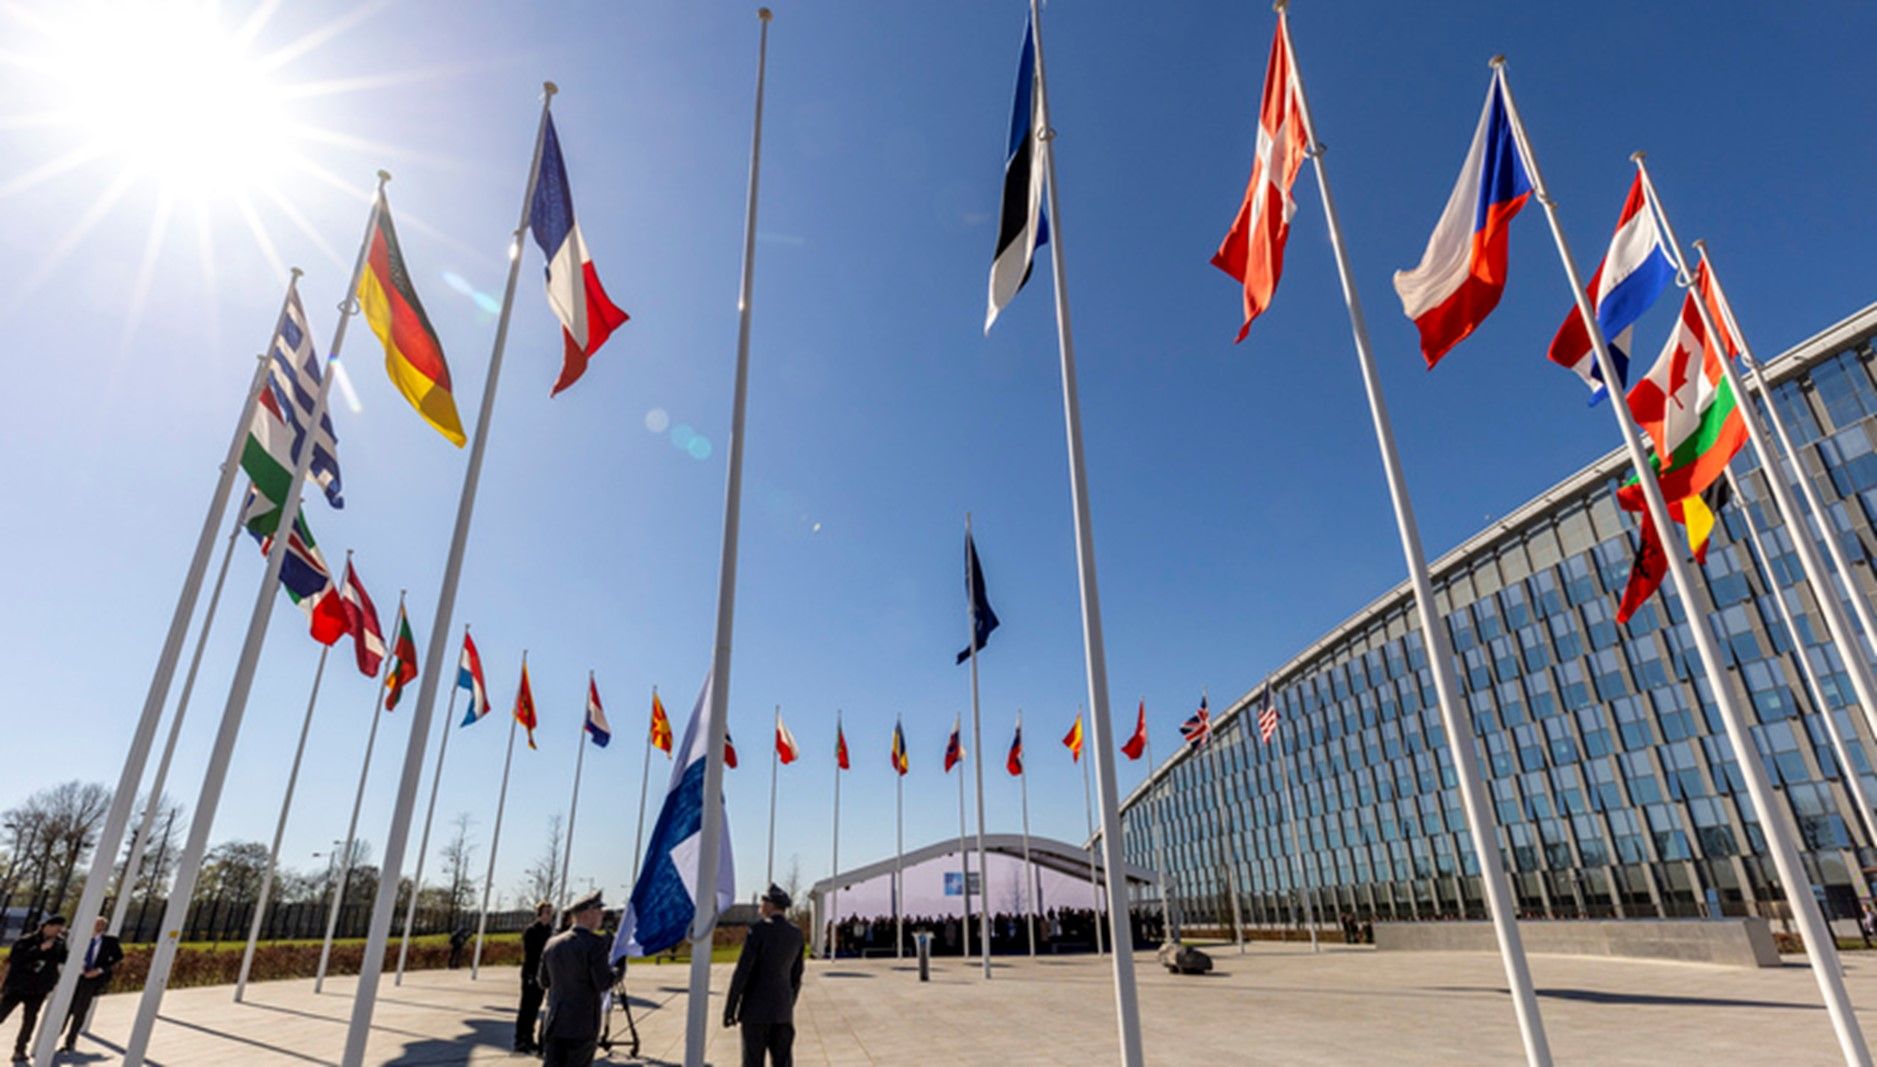 Izado de la bandera de Finlandia en el Cuartel General de la Alianza en Bruselas. Fuente: OTAN.